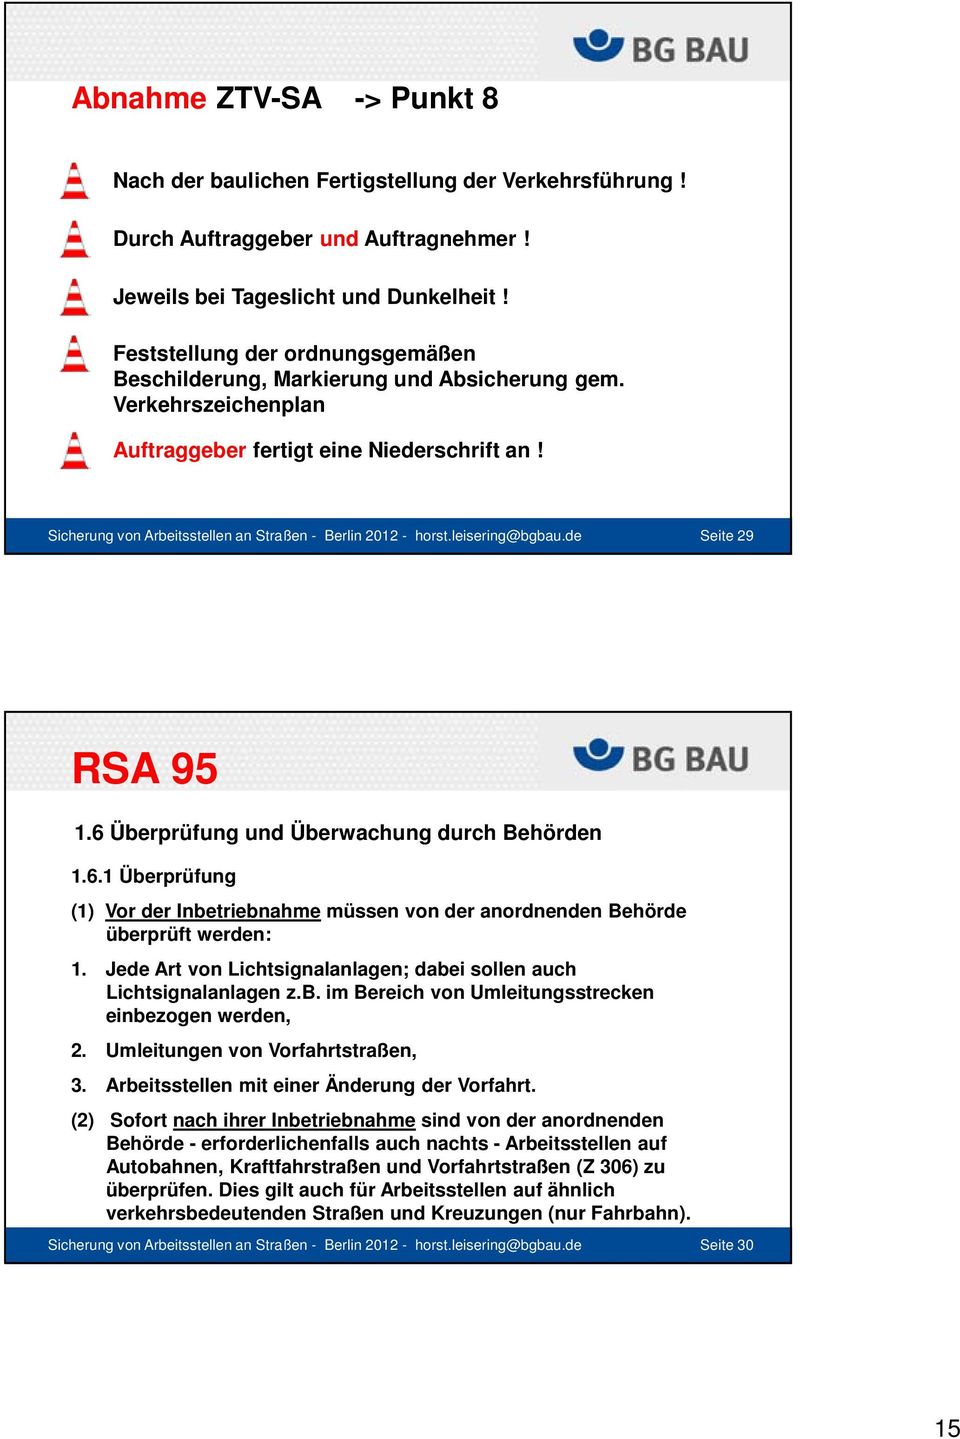 Sicherung von Arbeitsstellen an Straßen - Berlin 2012 - horst.leisering@bgbau.de Seite 29 RSA 95 1.6 Überprüfung und Überwachung durch Behörden 1.6.1 Überprüfung (1) Vor der Inbetriebnahme müssen von der anordnenden Behörde überprüft werden: 1.